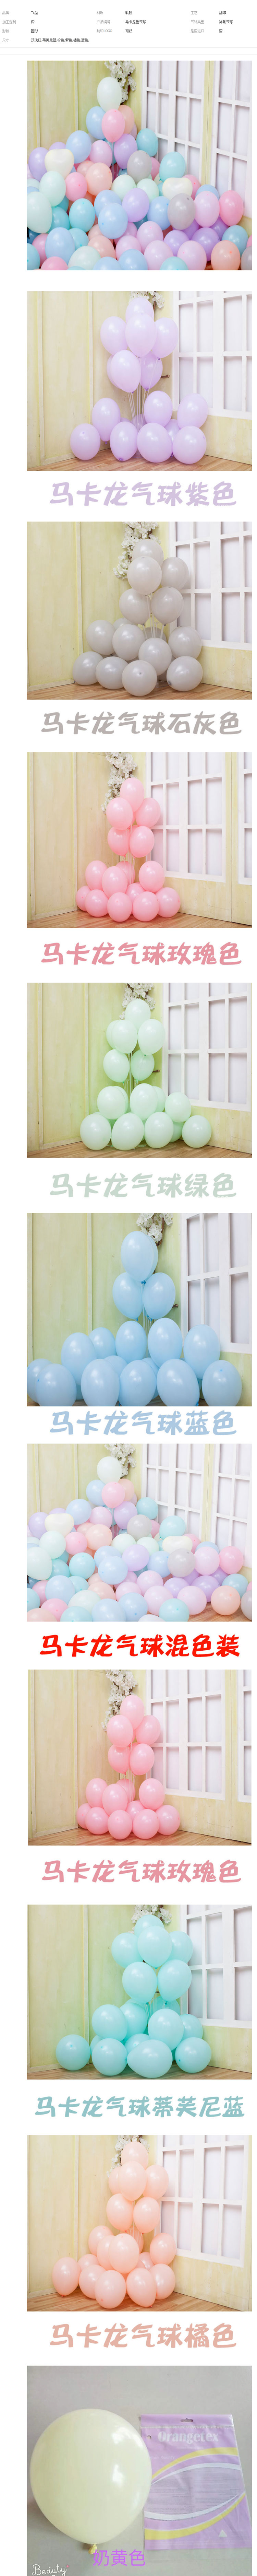 乳胶气球_装饰告白气球10寸马卡龙2